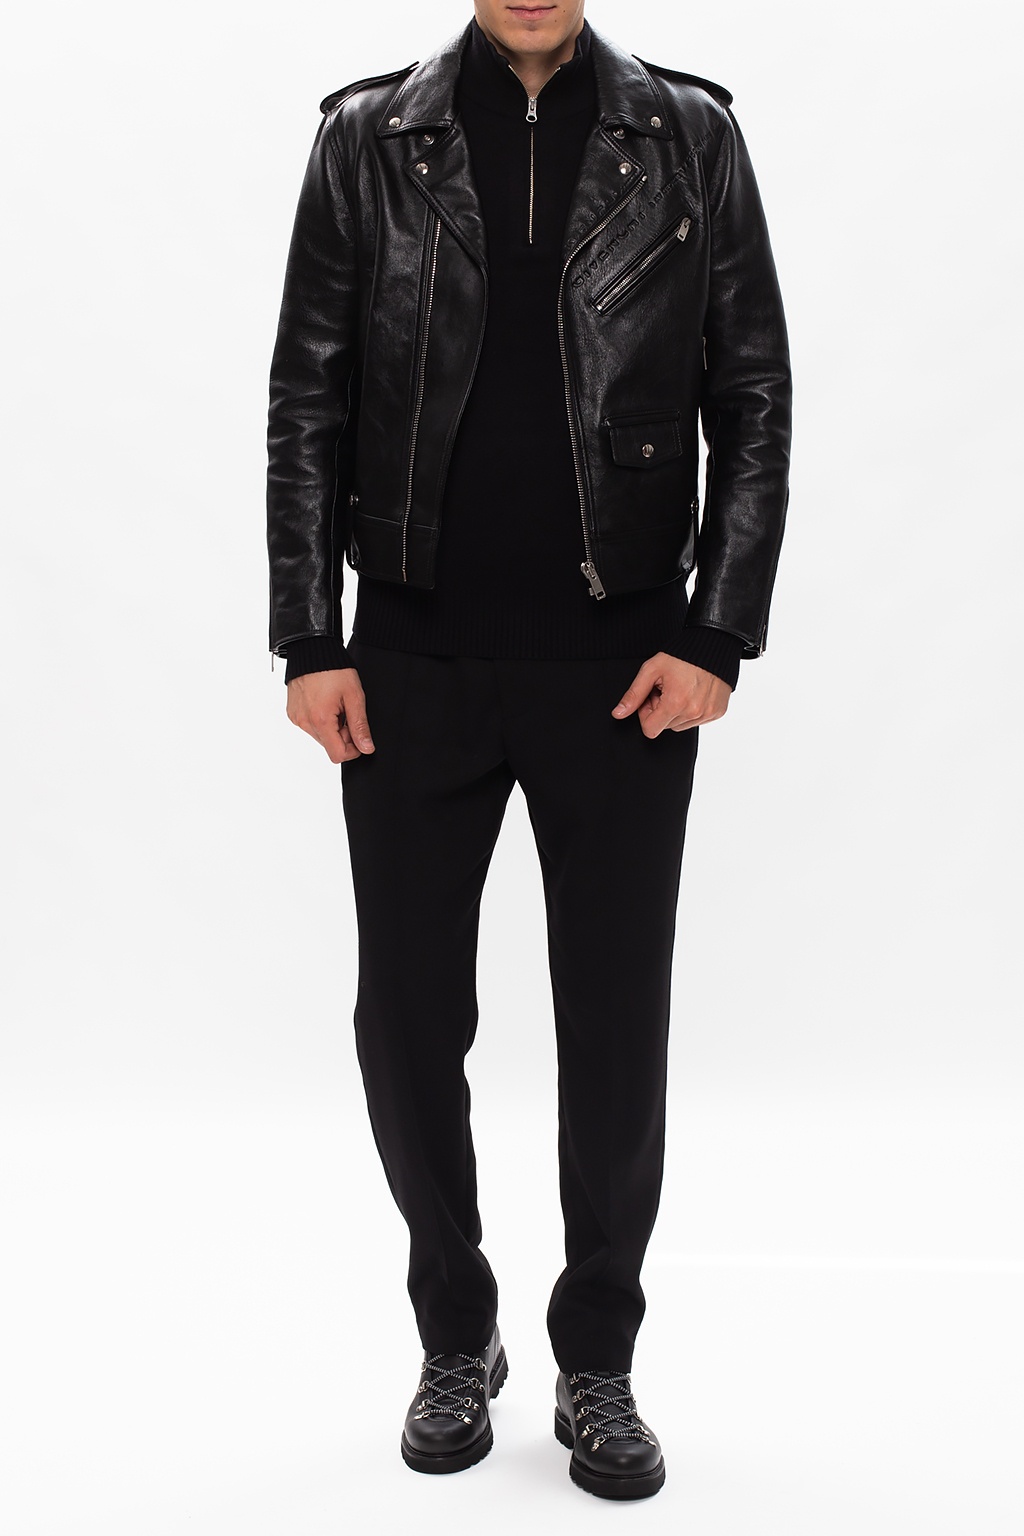 givenchy black leather jacket